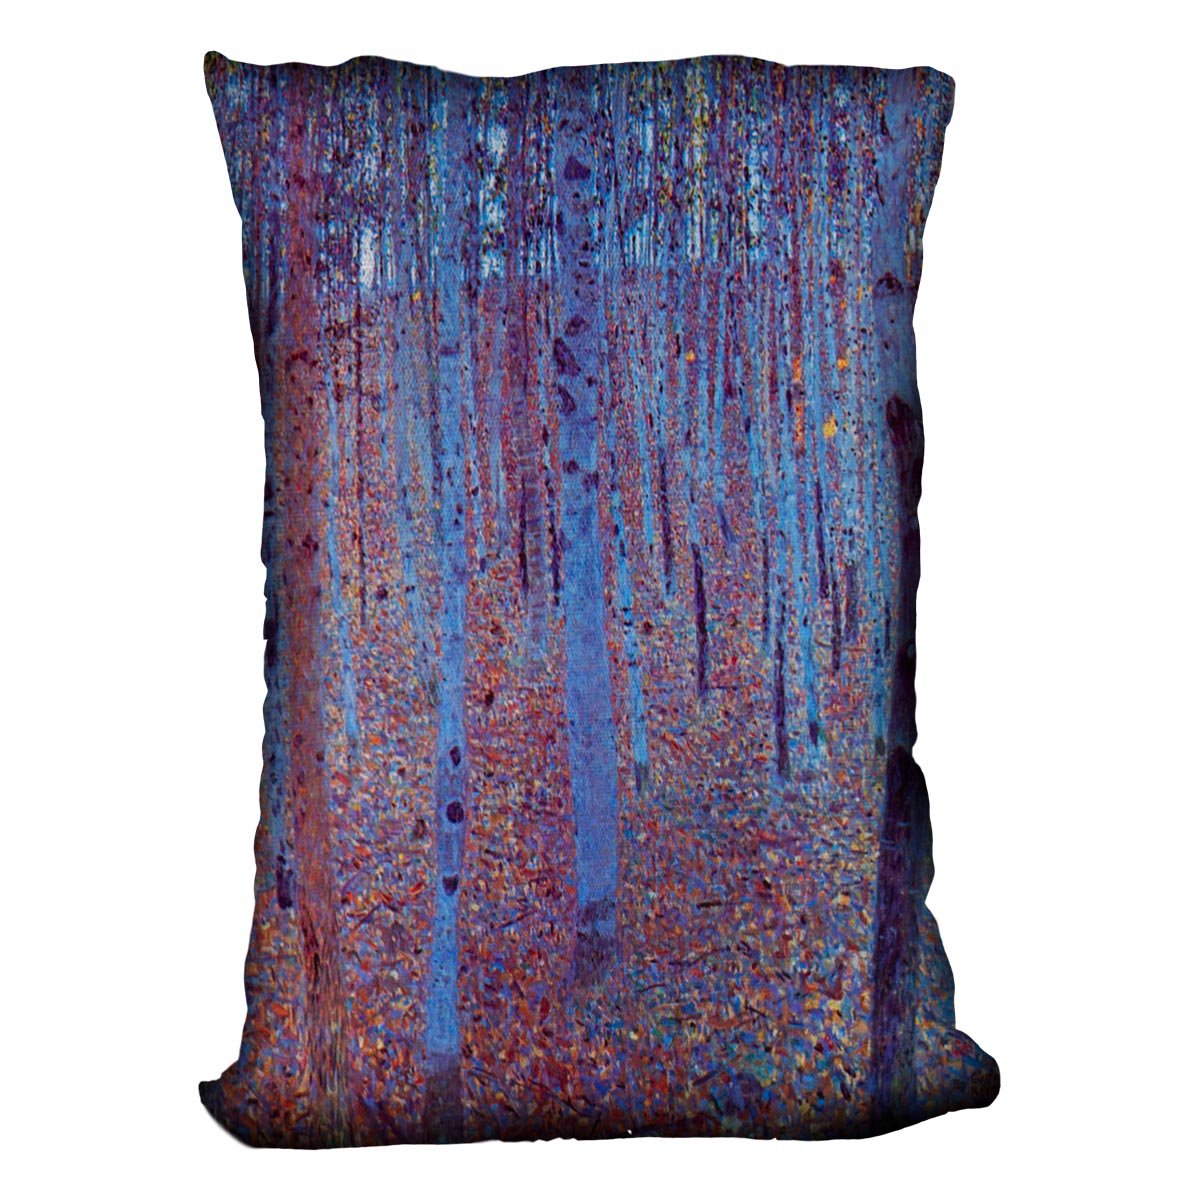 Beech Forest by Klimt Throw Pillow